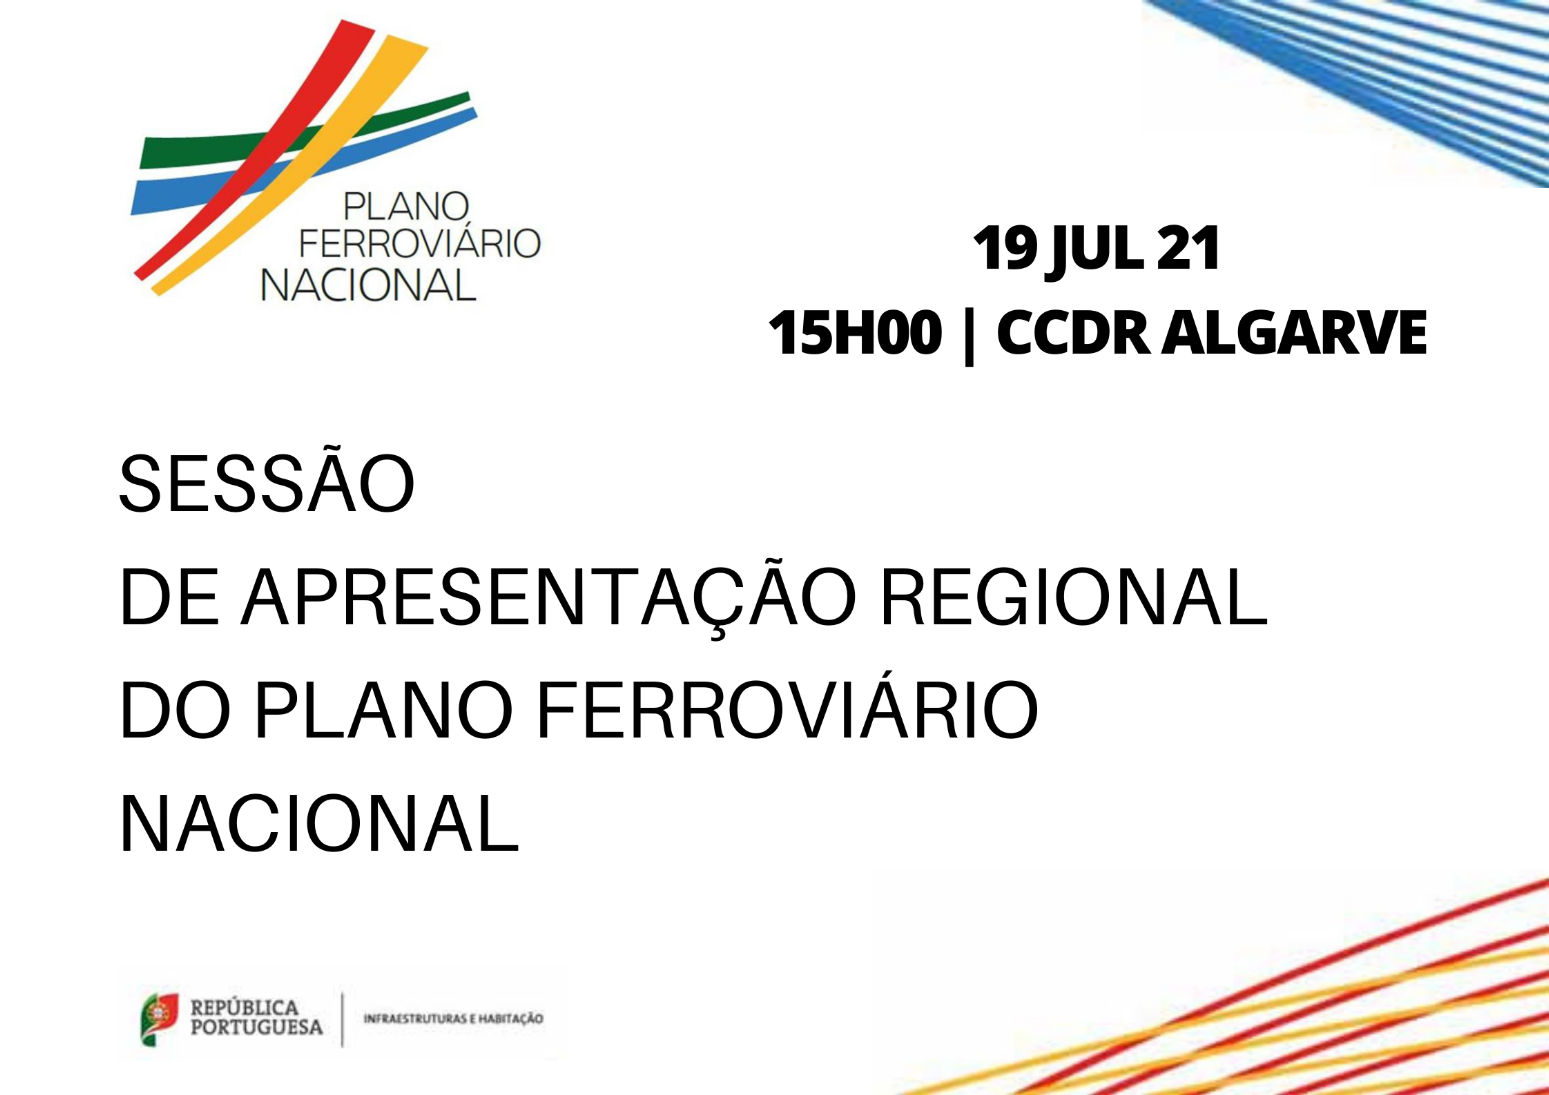 CCDR Algarve: Conheça o programa da sessão regional sobre o Plano Ferroviário Nacional